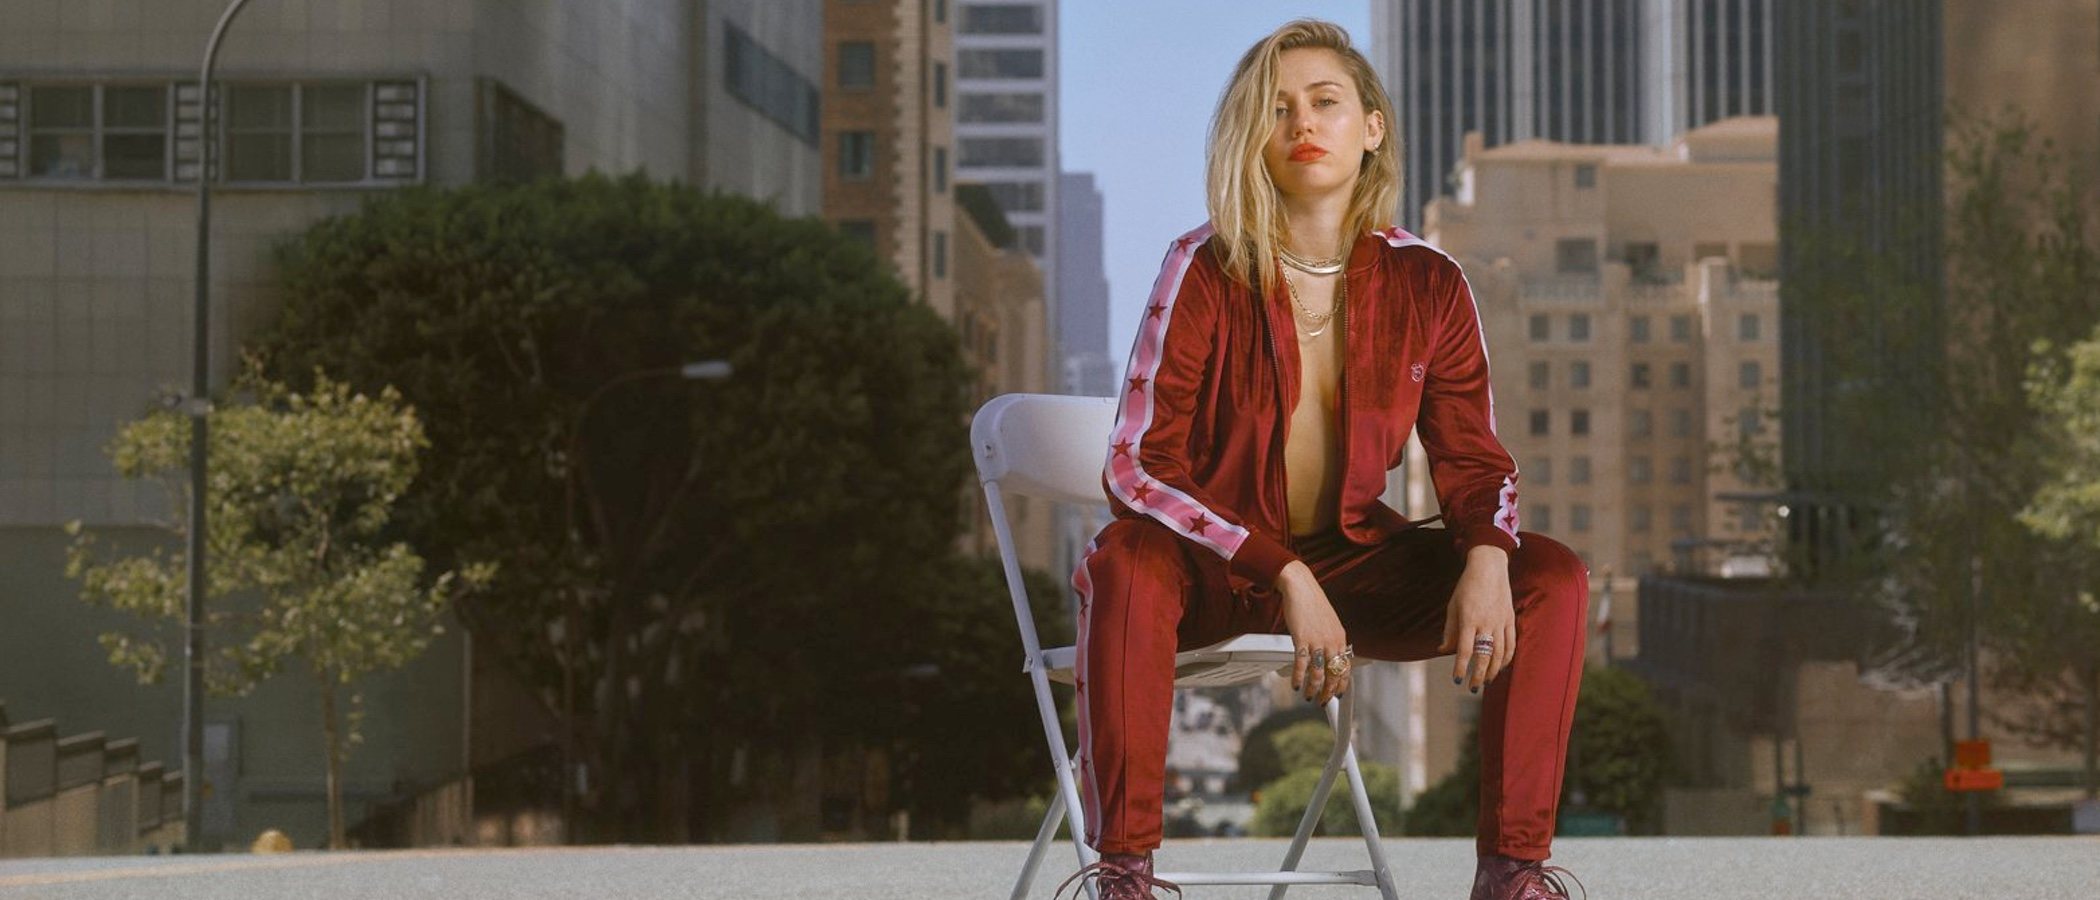 Terciopelo, jacquard y purpurina, las tendencias de la tercera colección de 'Converse x Miley Cyrus'